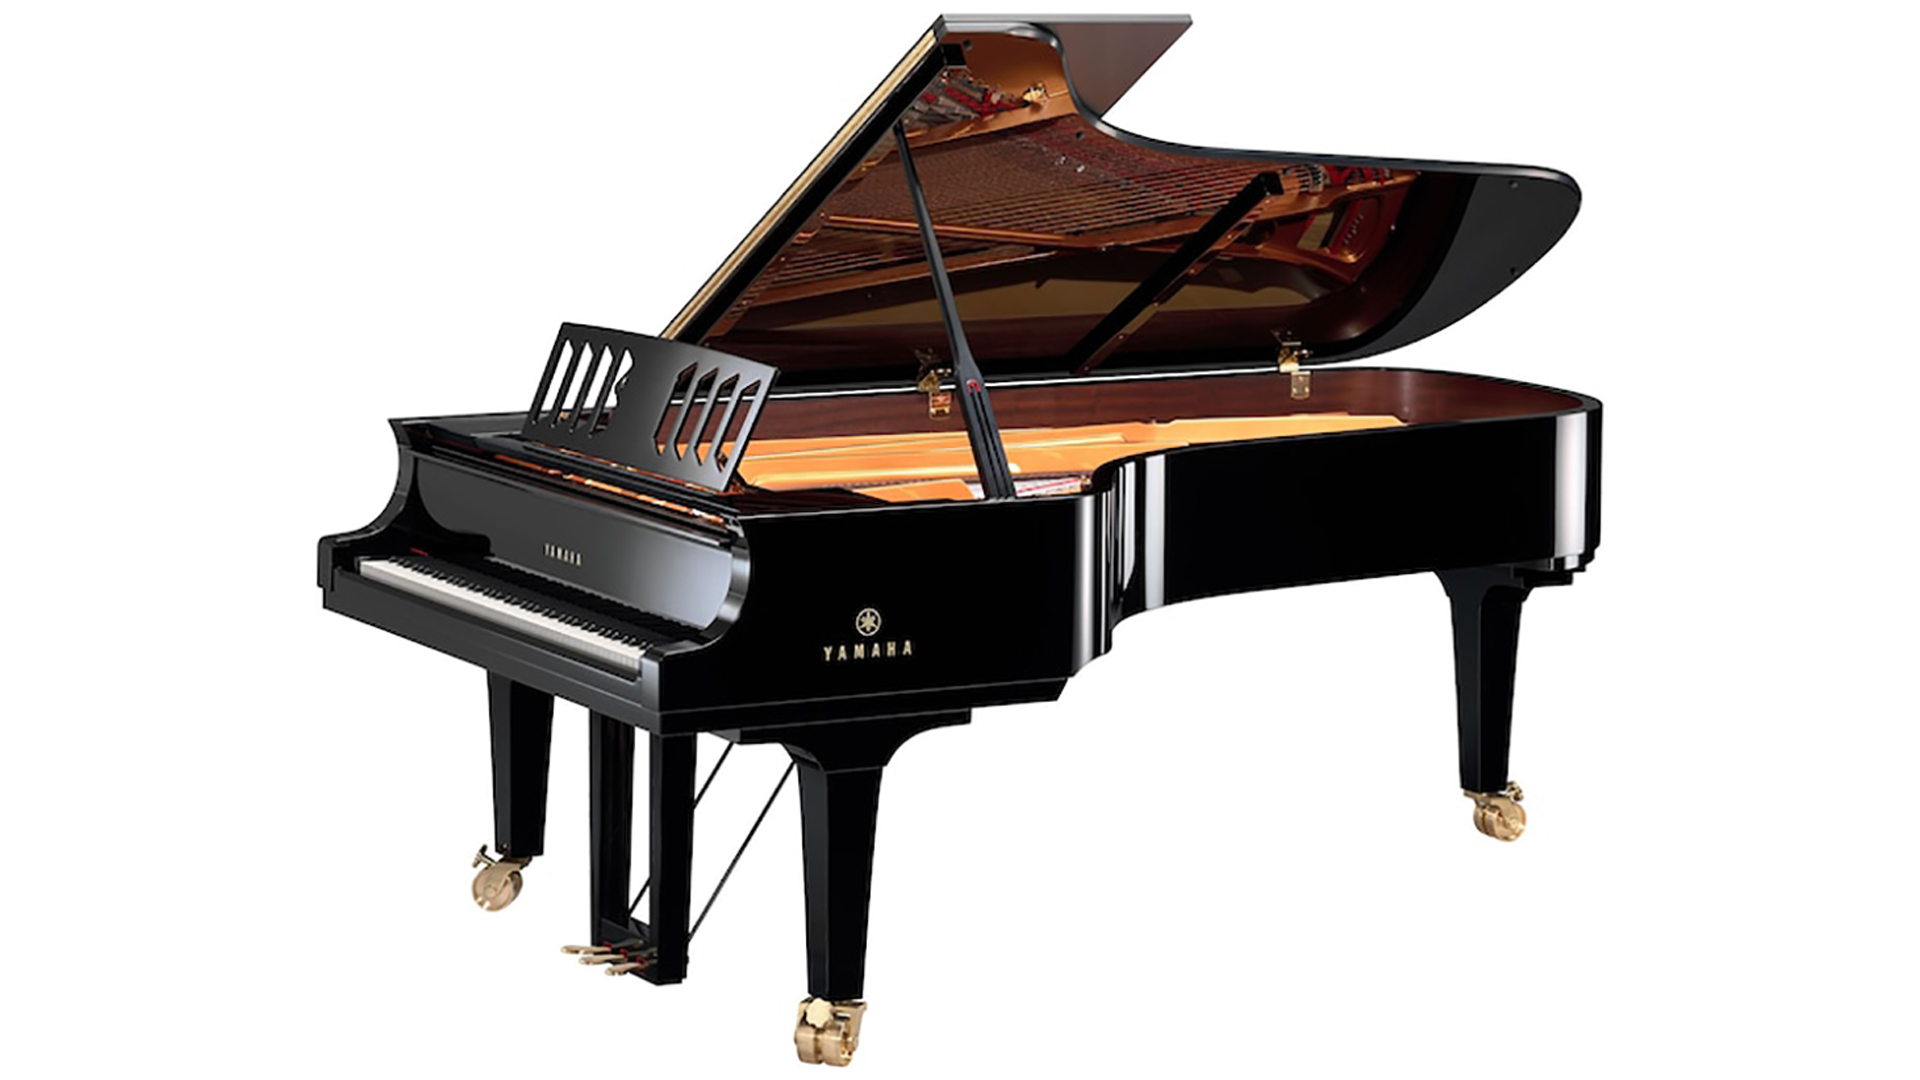 Yamaha concert grand piano Model cfx